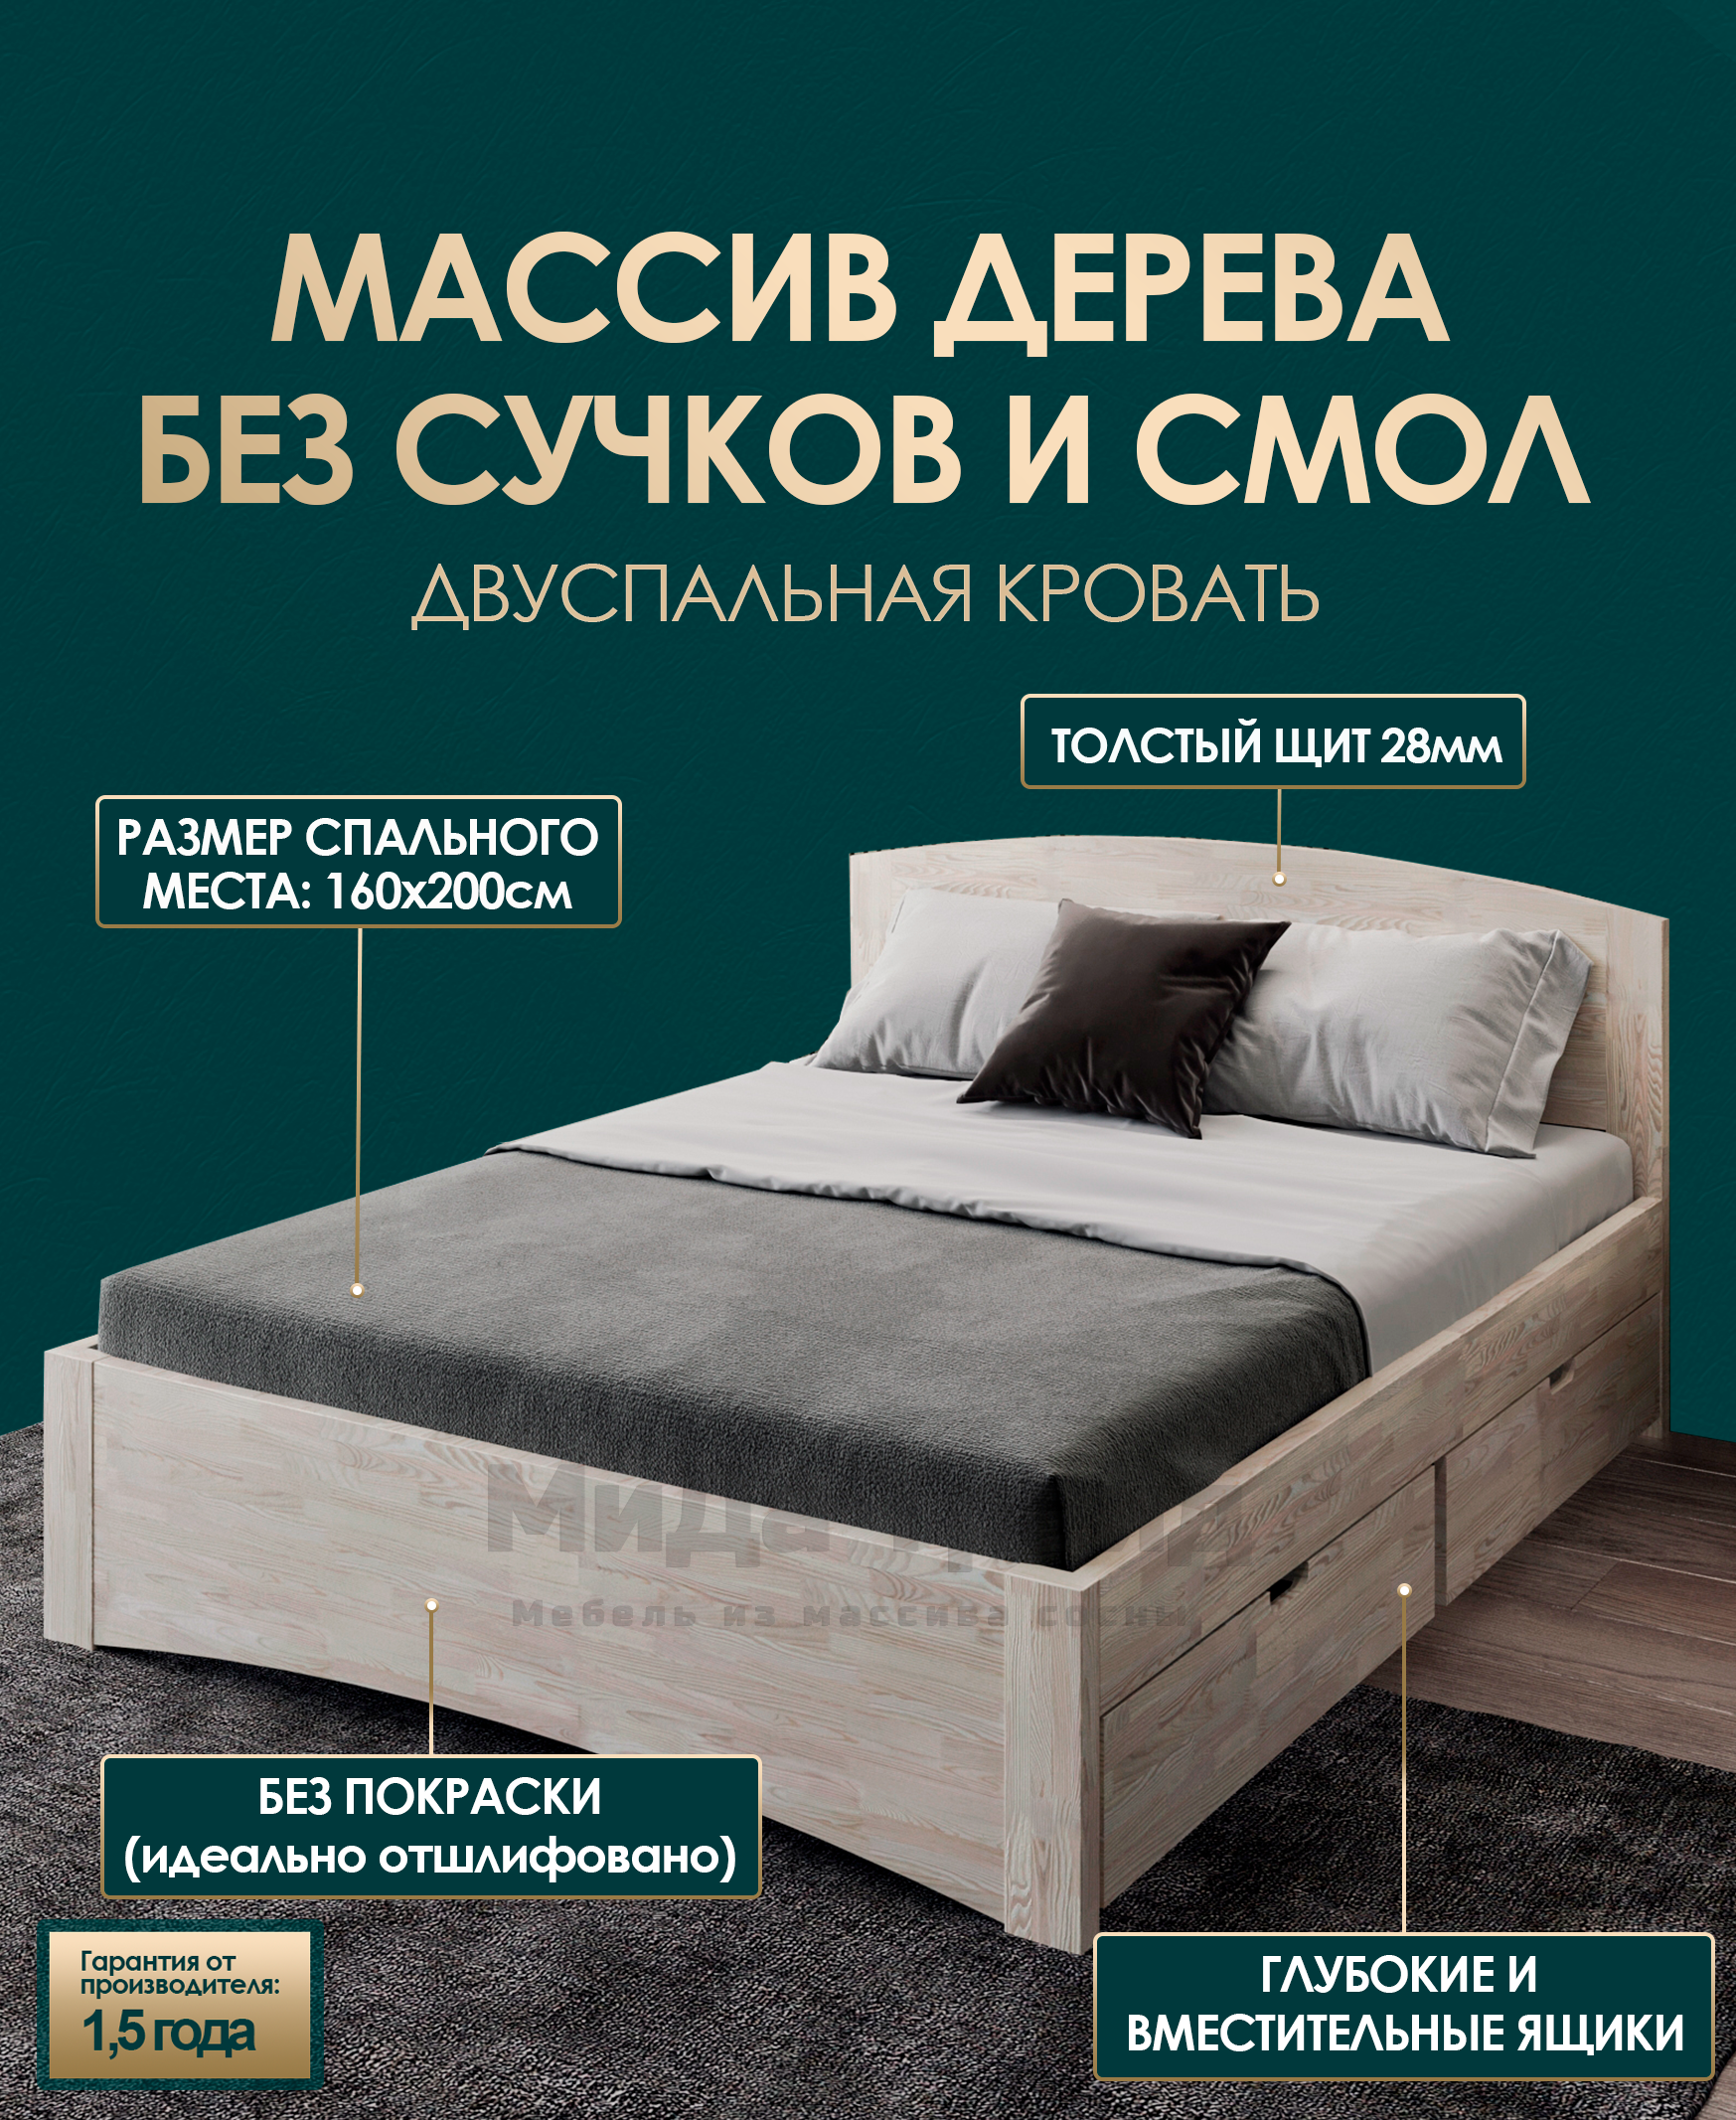 Мебель для гостиниц в Москве - купить гостиничную мебель от производителя «Мебельные технологии»